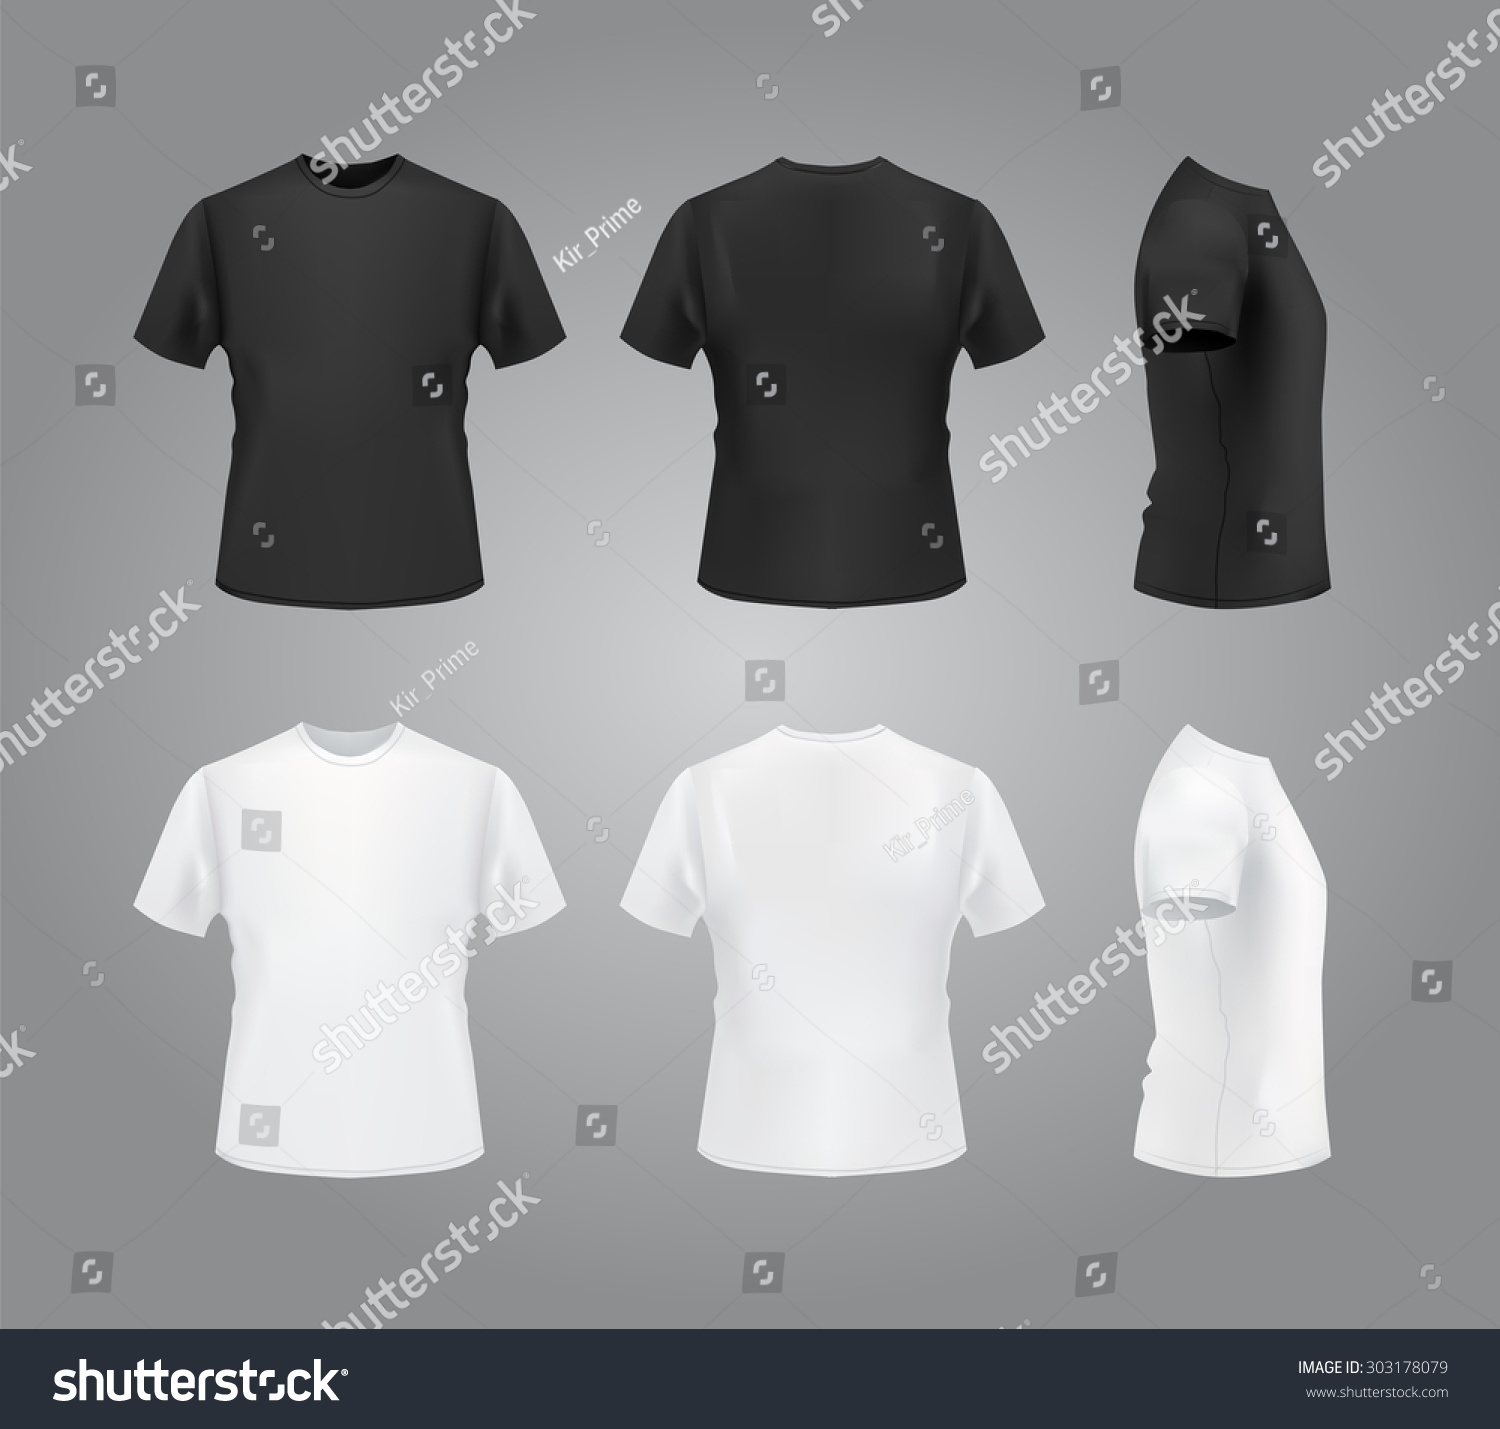 T-shirt template set, front, side, back view mockup. Vector eps 10 illustration. #303178079